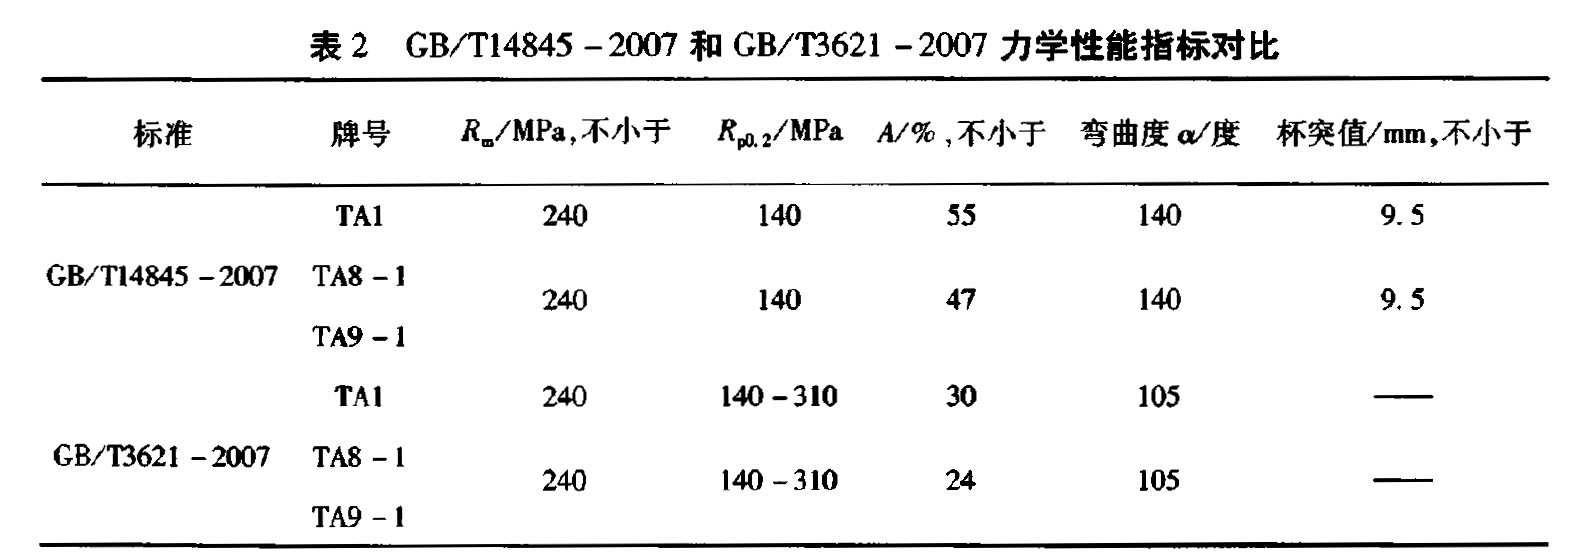 表2 GB/Tl4845-2007和 GB/T3621-2007 力学性能指标对比